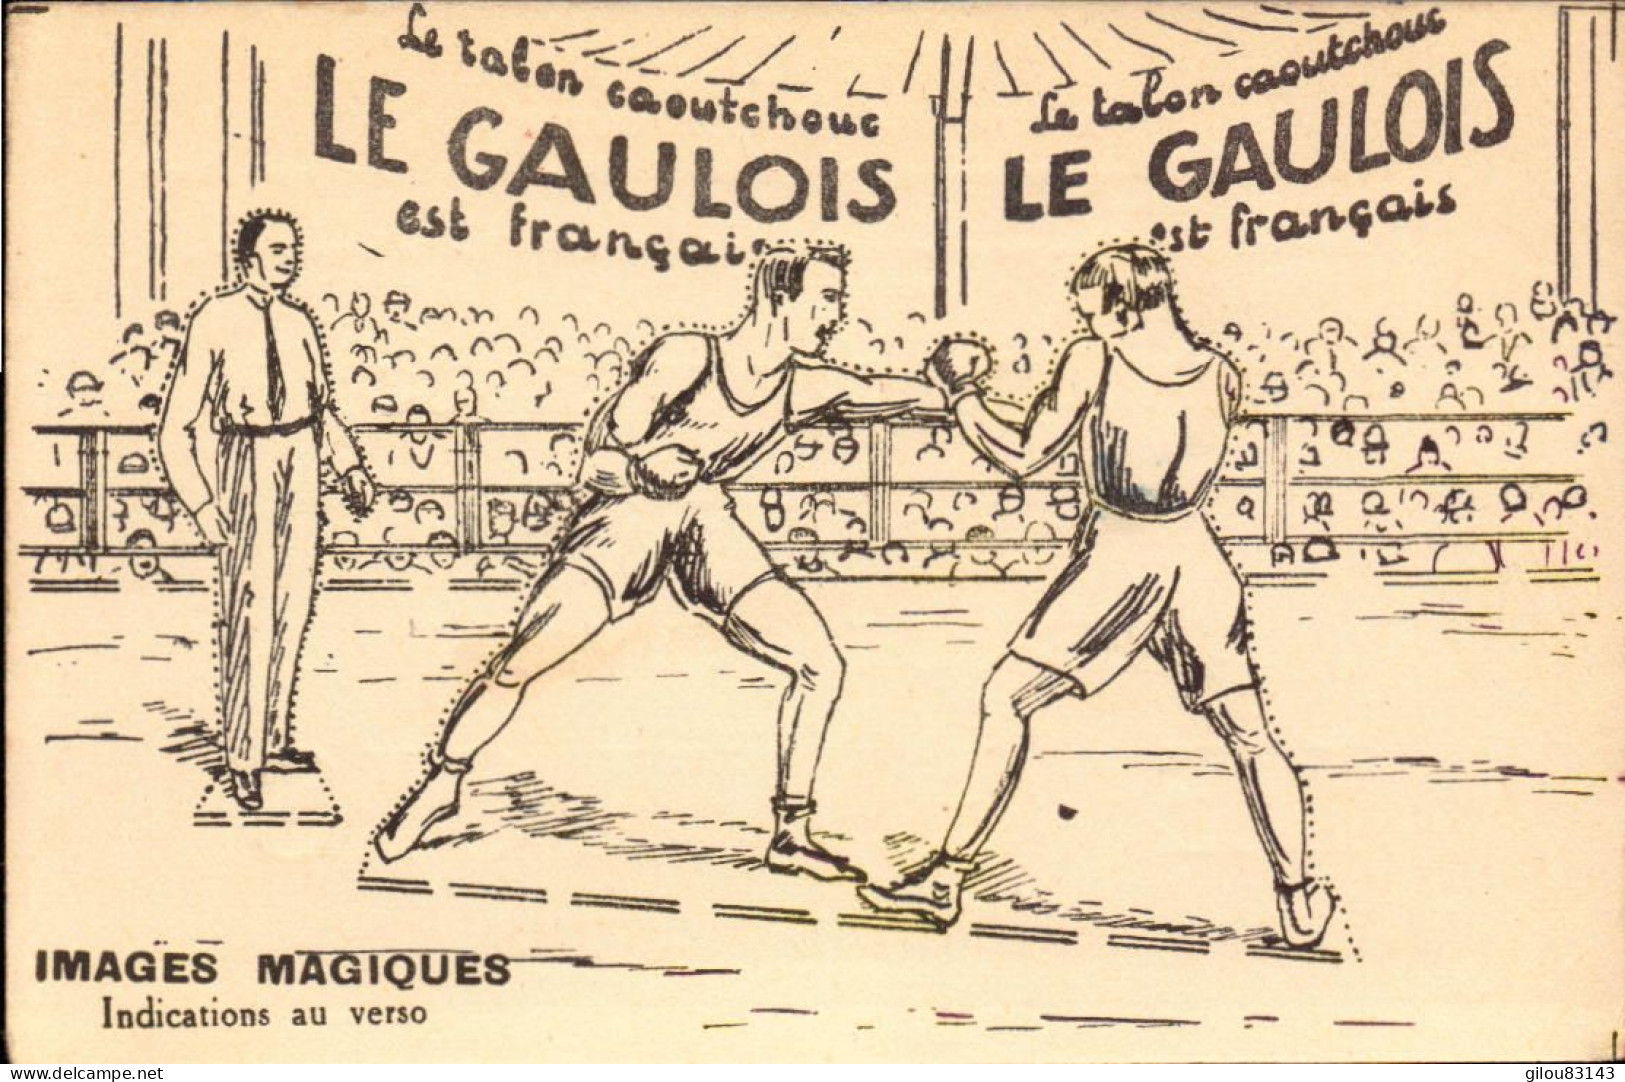 Bergougnan, Le Gaulois, Talons Caoutchouc, Illustration Boxe, Boxeurs - Advertising